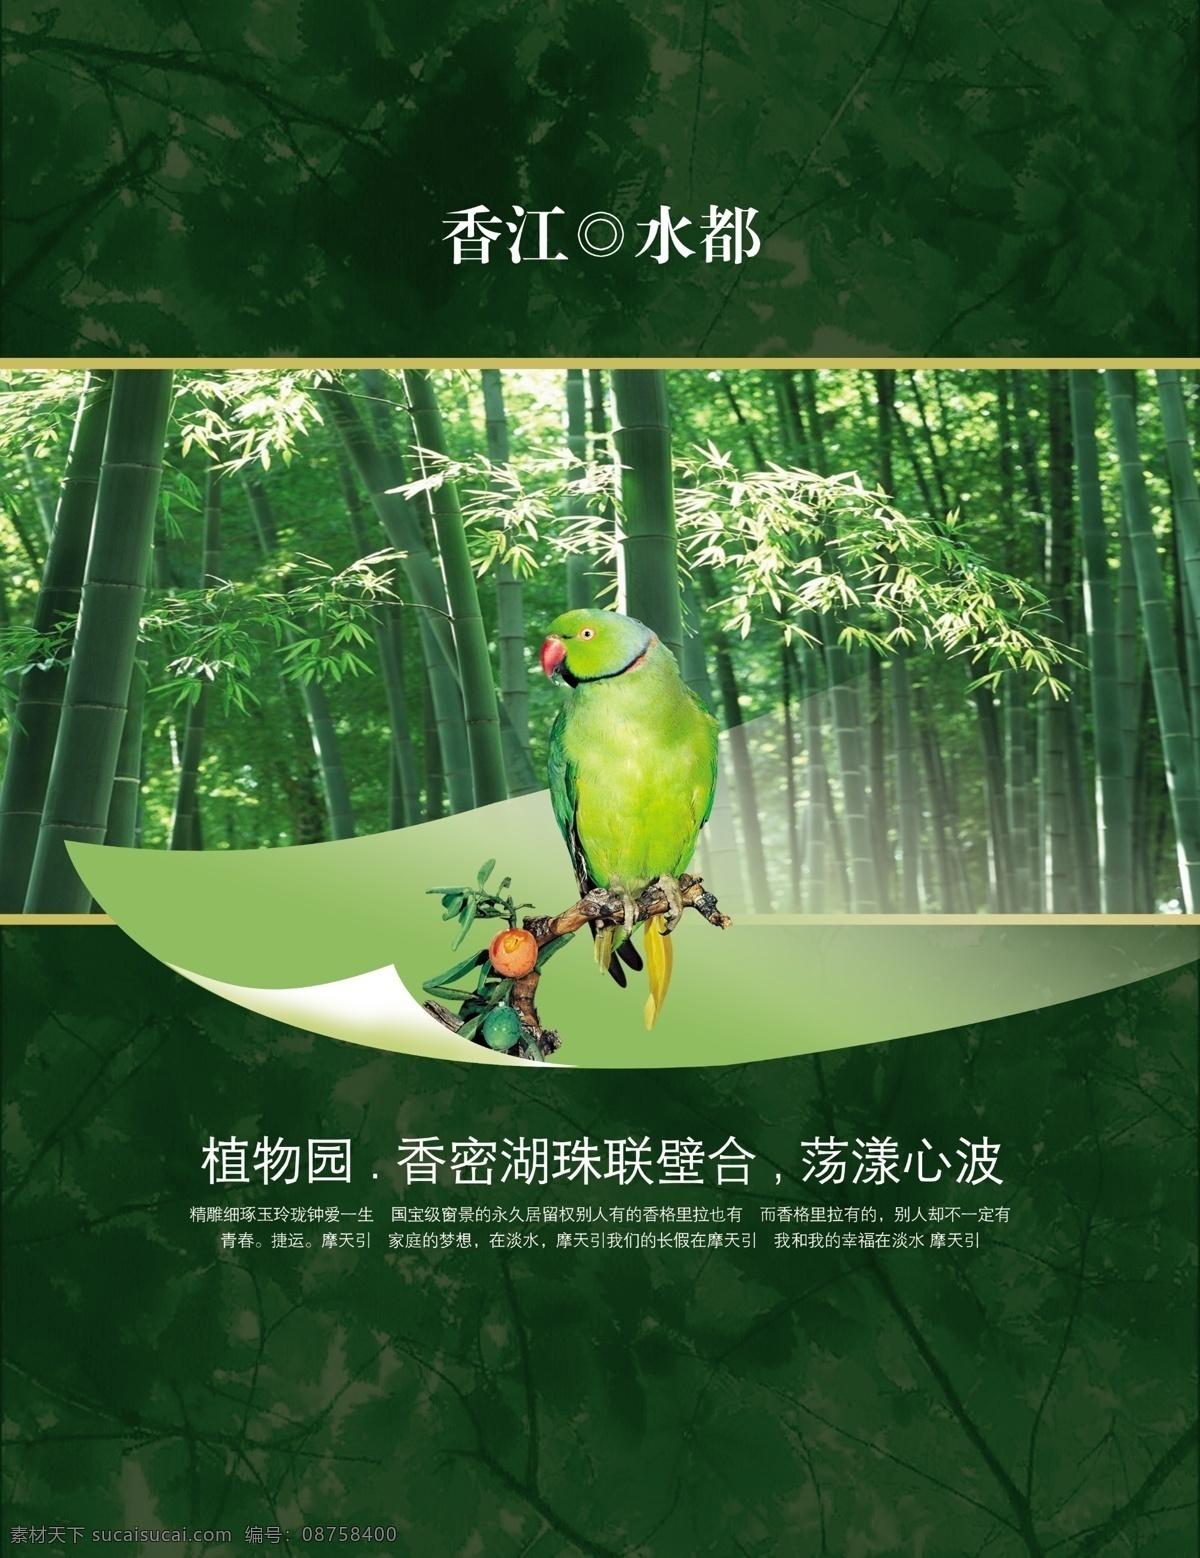 中国 风 竹林 风景 绿色 文艺 宣传海报 中国风 竹林风景